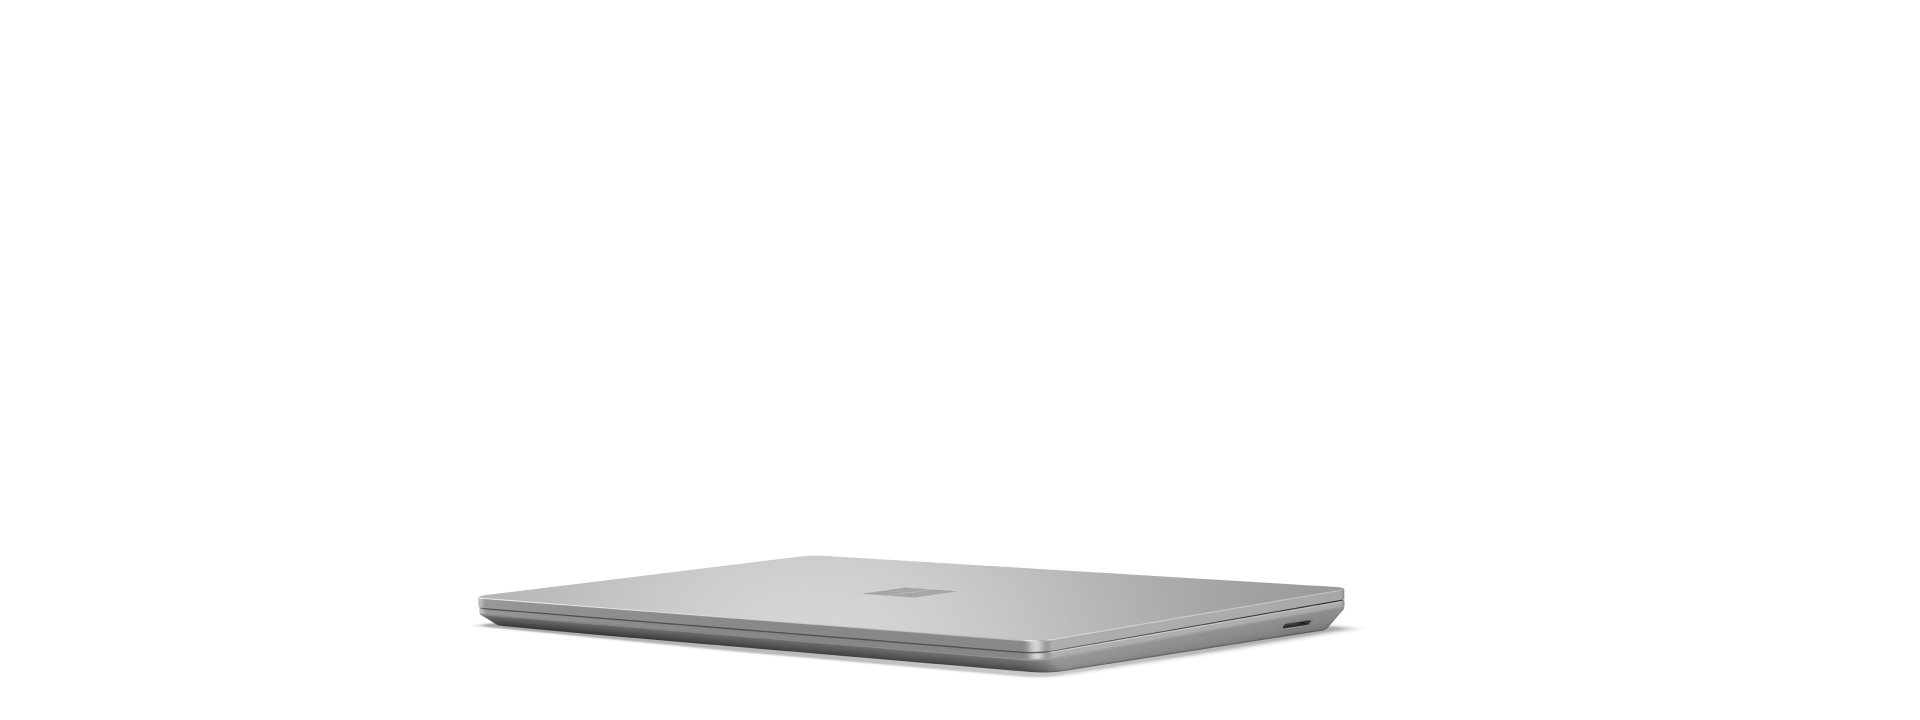 회전하며 열리고 닫히는 Surface Laptop Go 3. 회전 중에 디바이스를 모든 각도에서 본 모습이 표시됩니다.